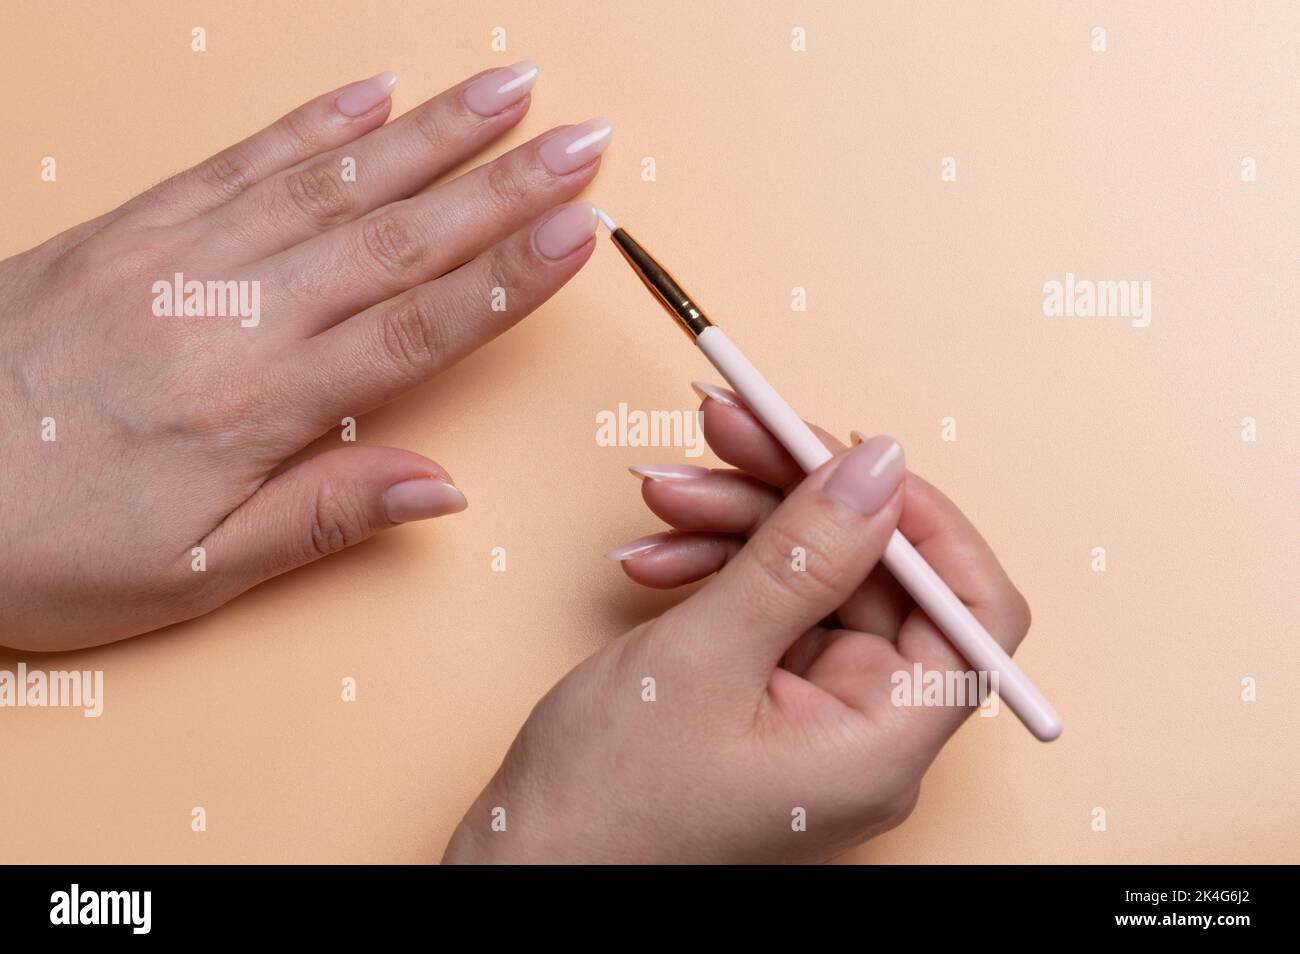 Chiodo per pittura con piccola spazzola sulle mani di donna in colore beige fondo Foto Stock